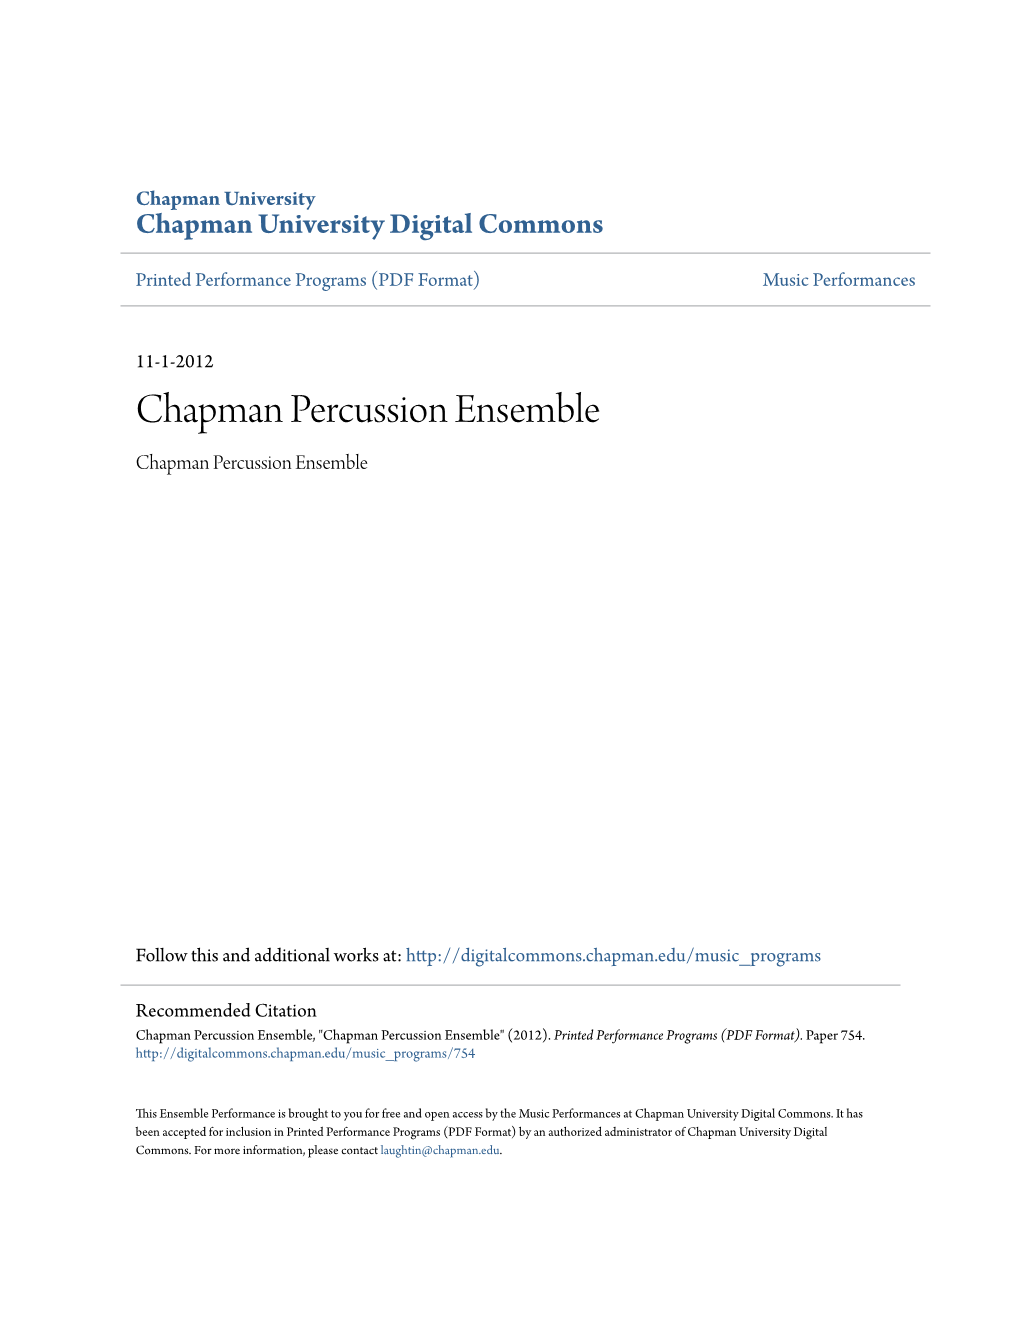 Chapman Percussion Ensemble Chapman Percussion Ensemble